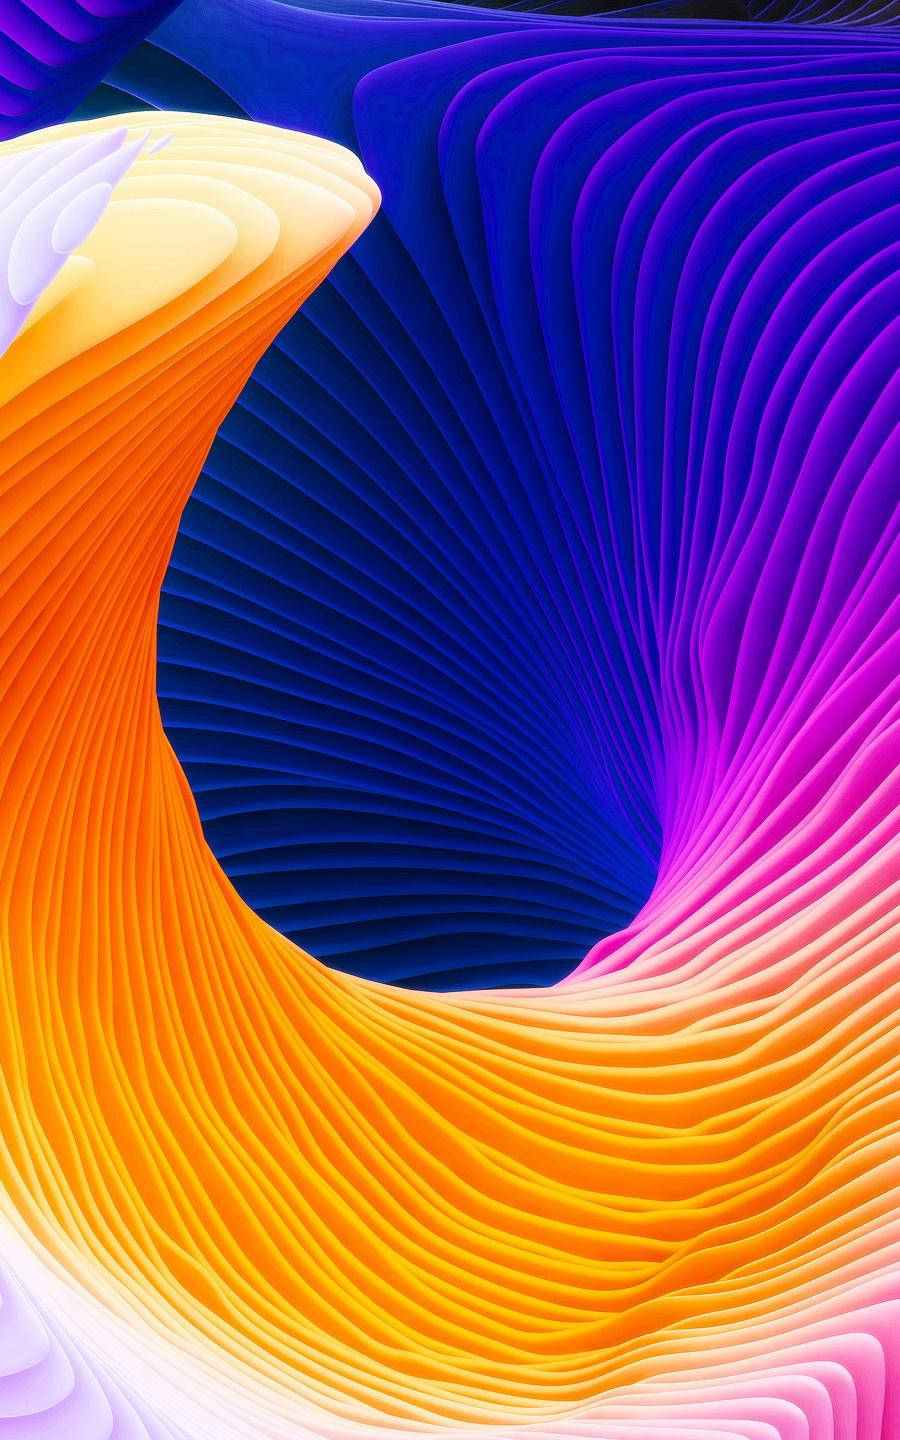 Rainbow Spiral Waves Background